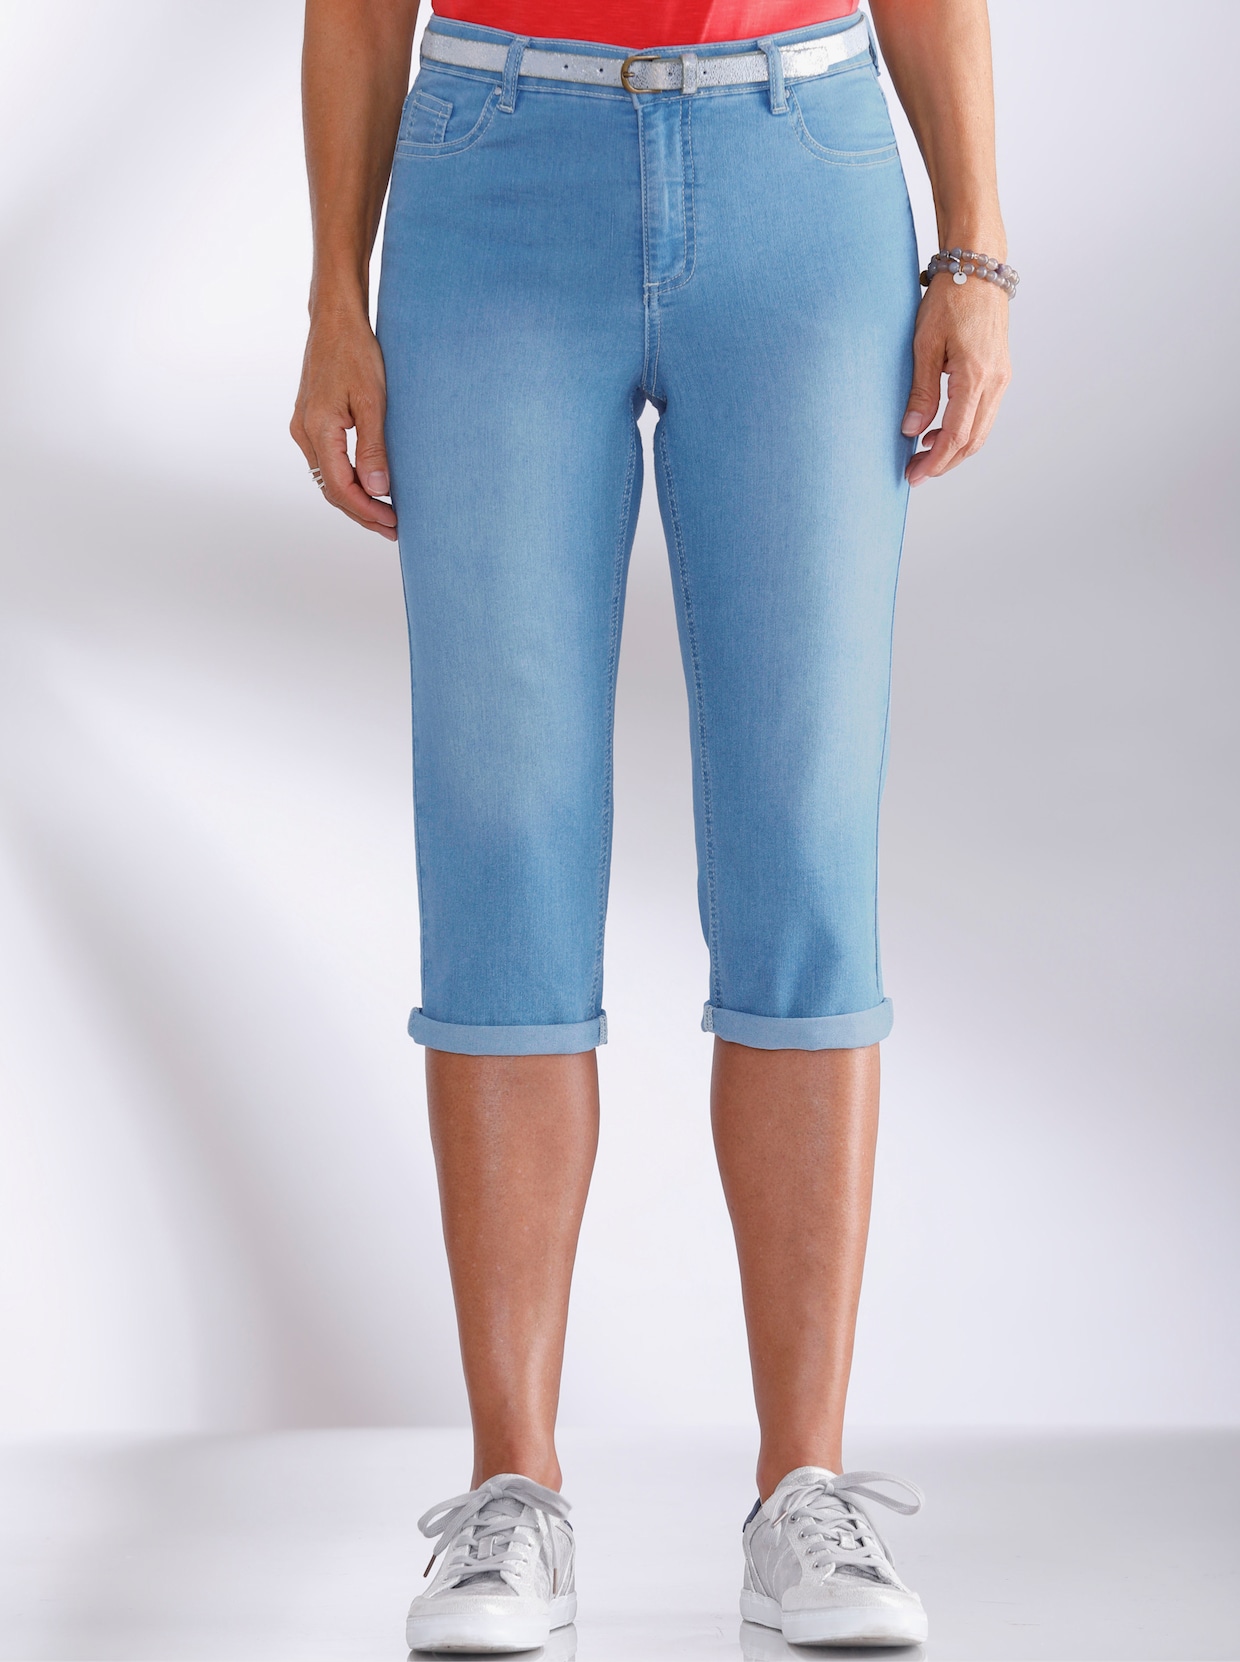 Capri kalhoty - bělená modrá